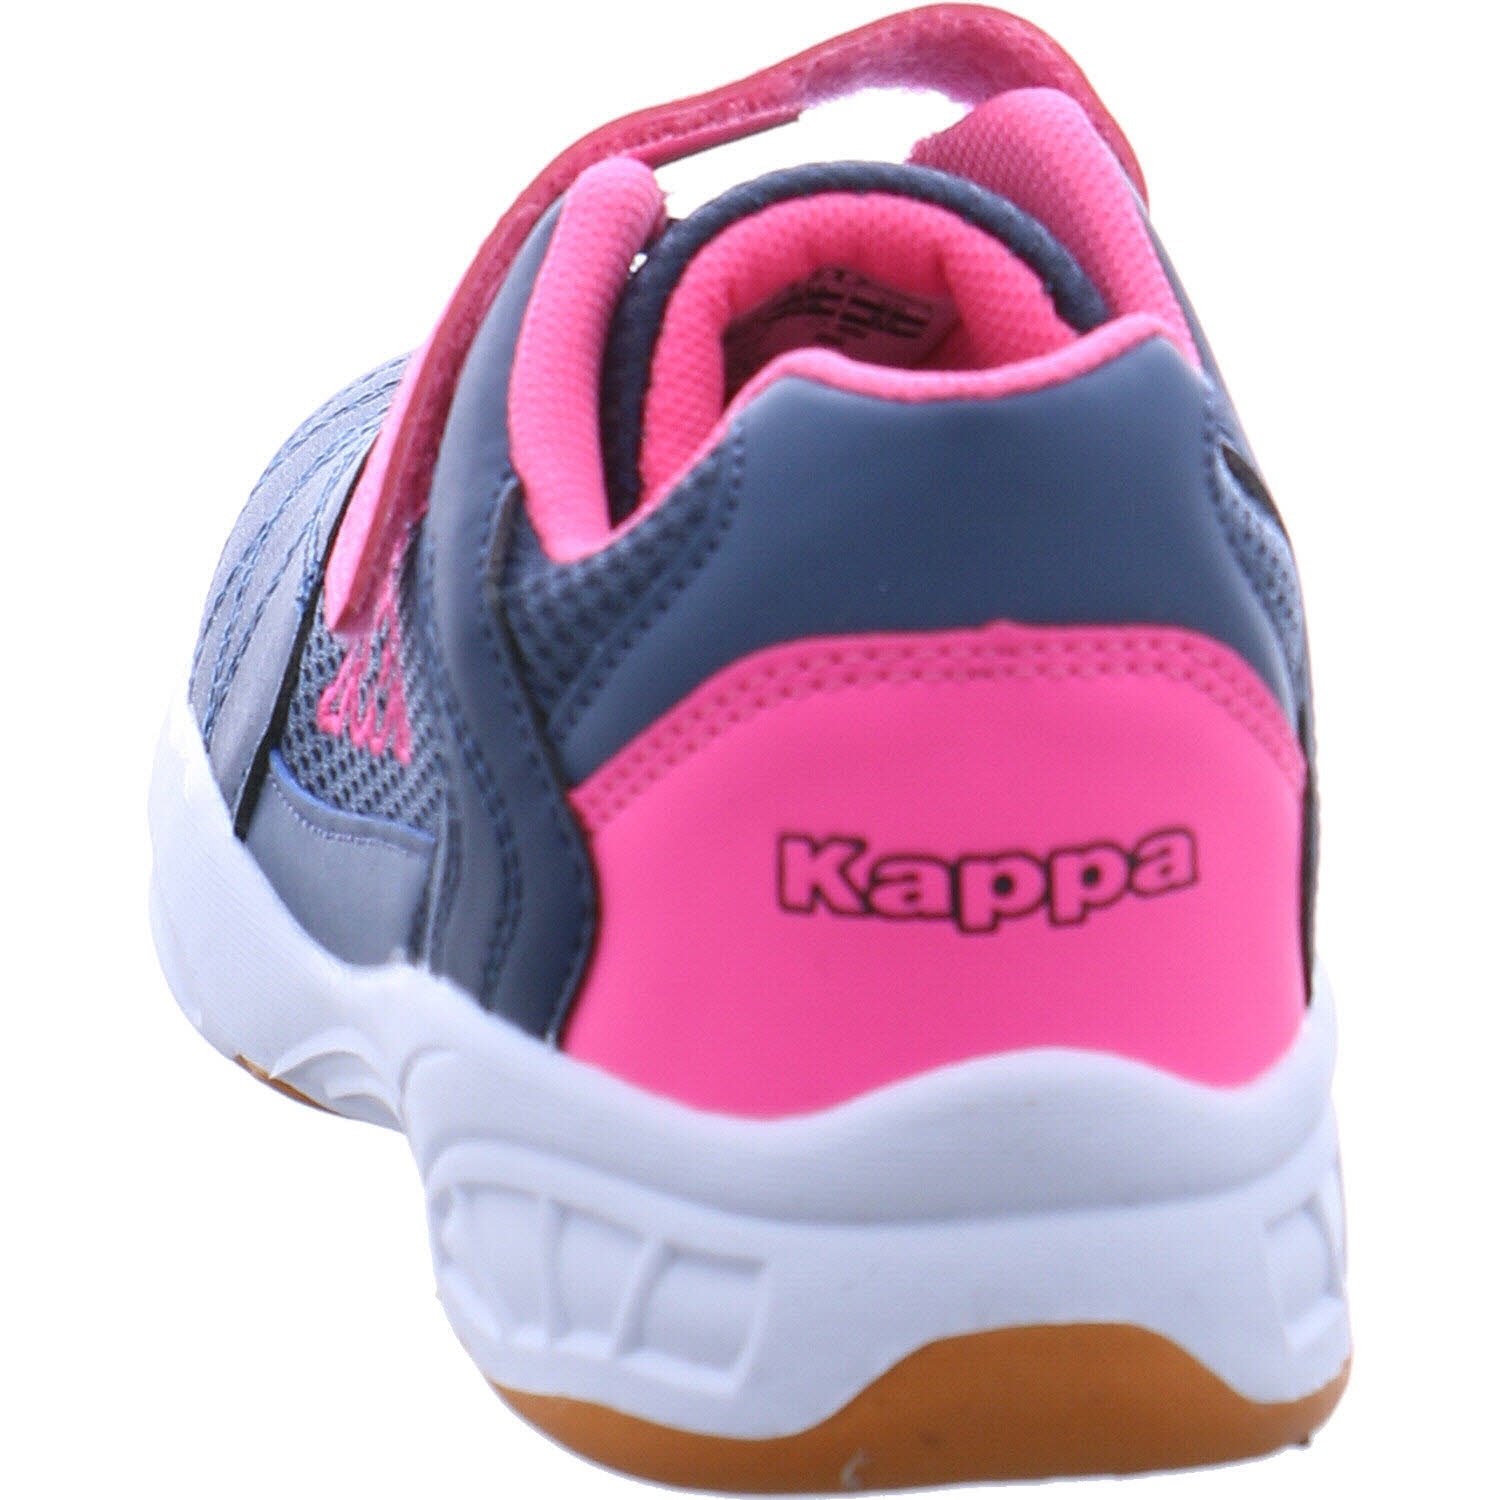 Stylecode: MF Droum Hallenschuh pink P&P Mädchen Kappa | blau/ 260819 für MFK II in Shoes K